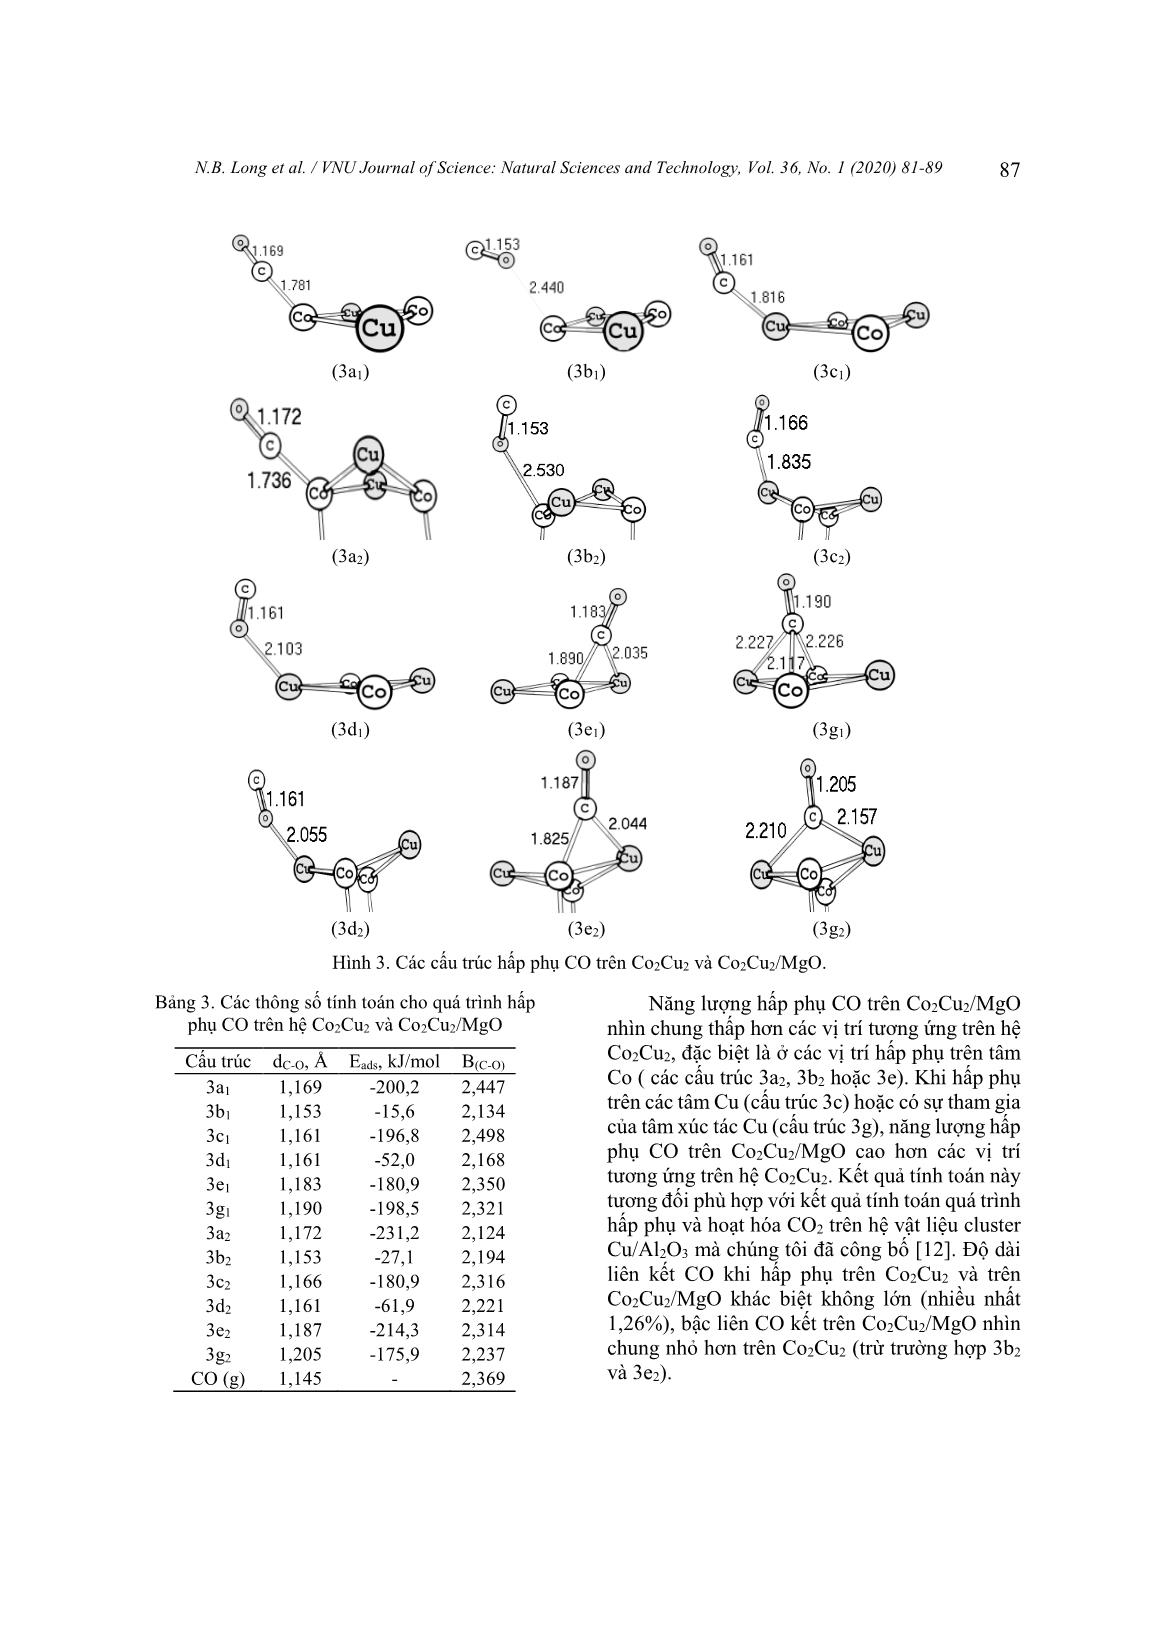 Nghiên cứu lí thuyết phản ứng hydro hóa CO trên hệ xúc tác lưỡng kim loại Co2Cu2 trên chất mang MgO(200) bằng phương pháp phiếm hàm mật độ - Phần 1: Giai đoạn hấp phụ và hoạt hóa trang 7